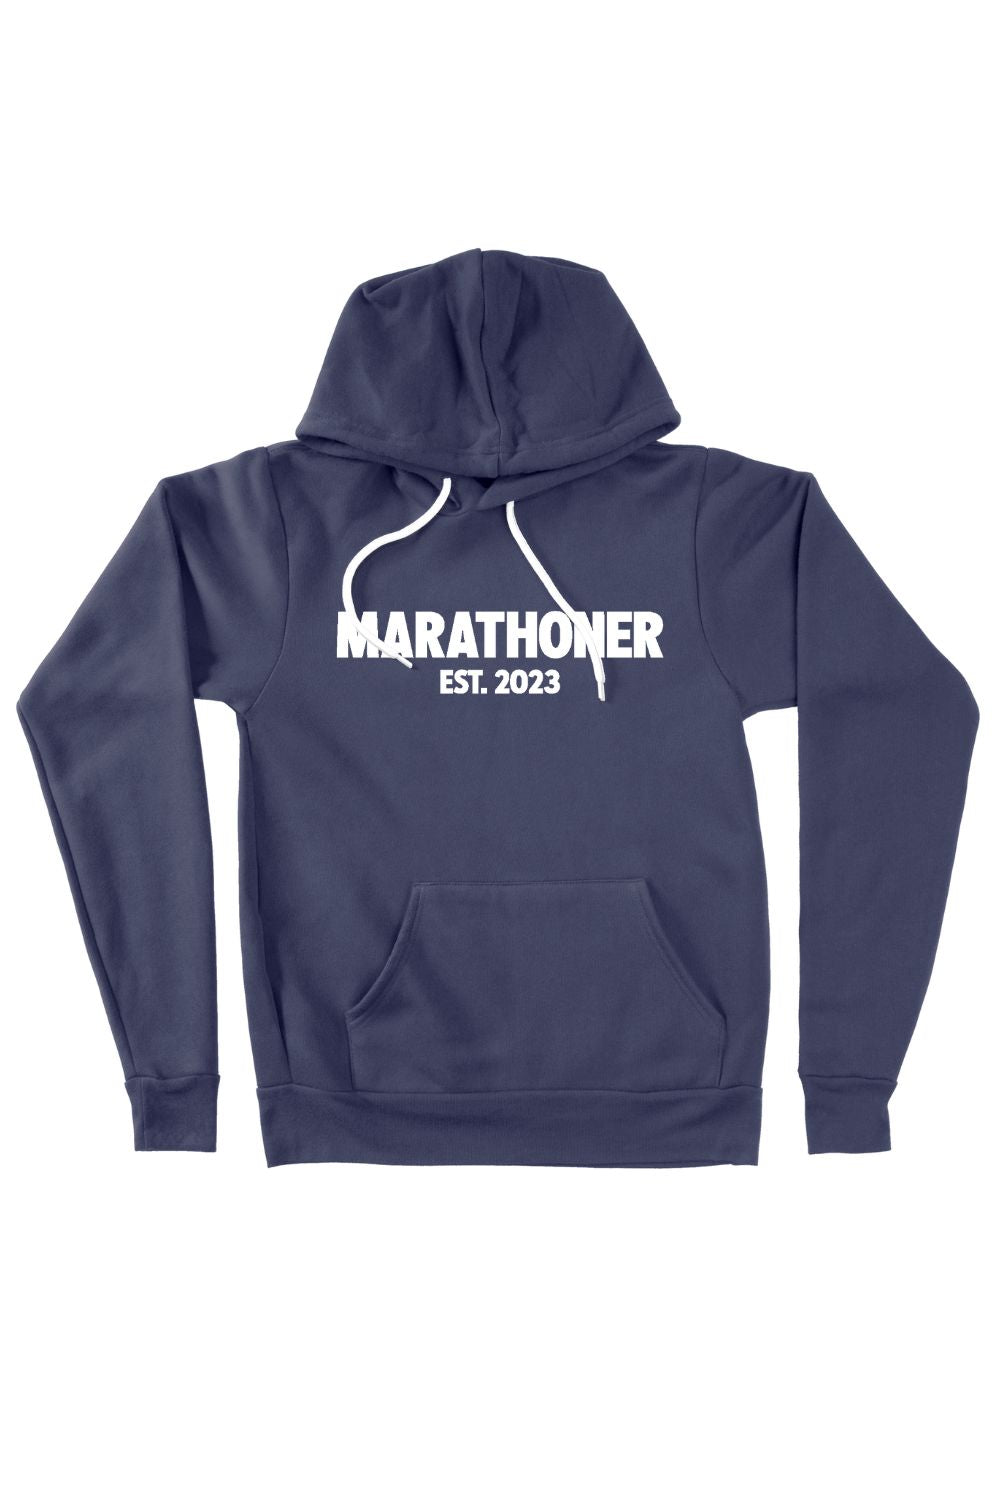 Marathoner EST Year Hoodie